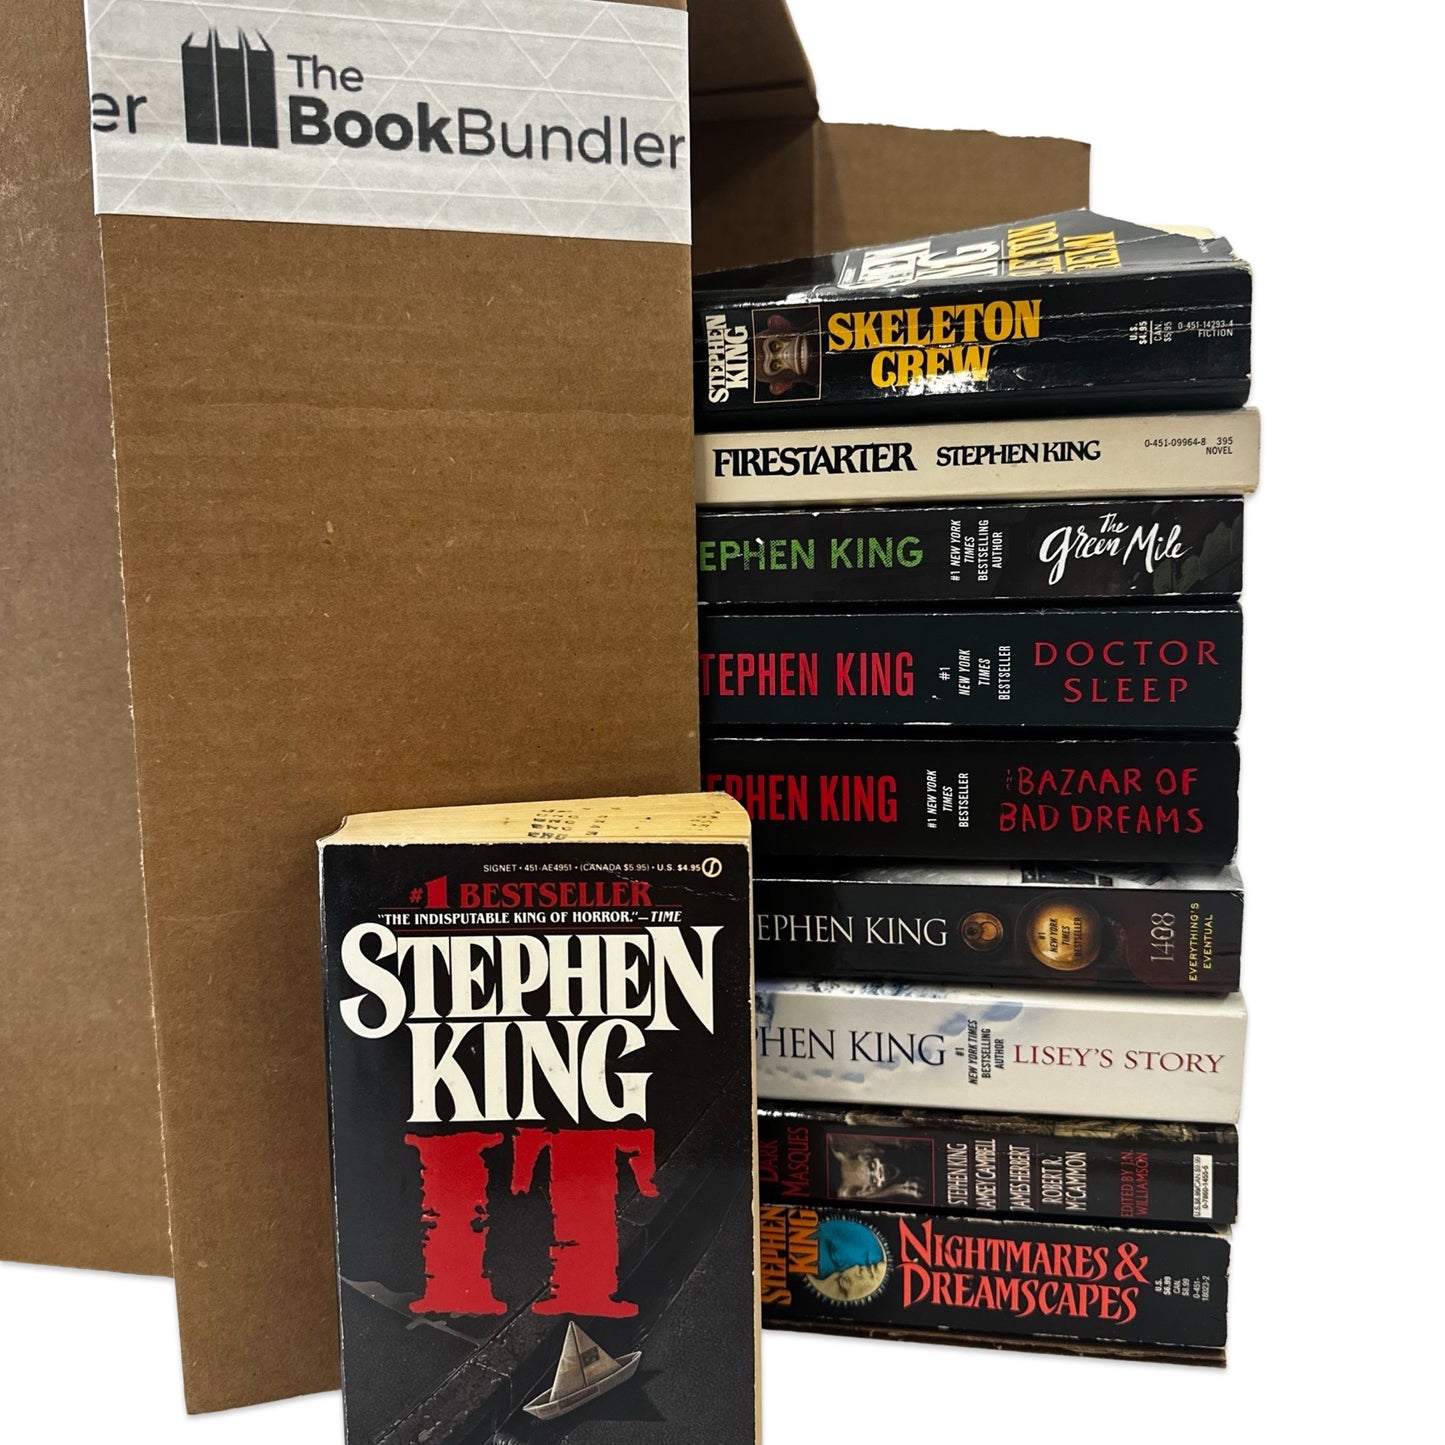 Stephen King books - Mass Market Paperbacks